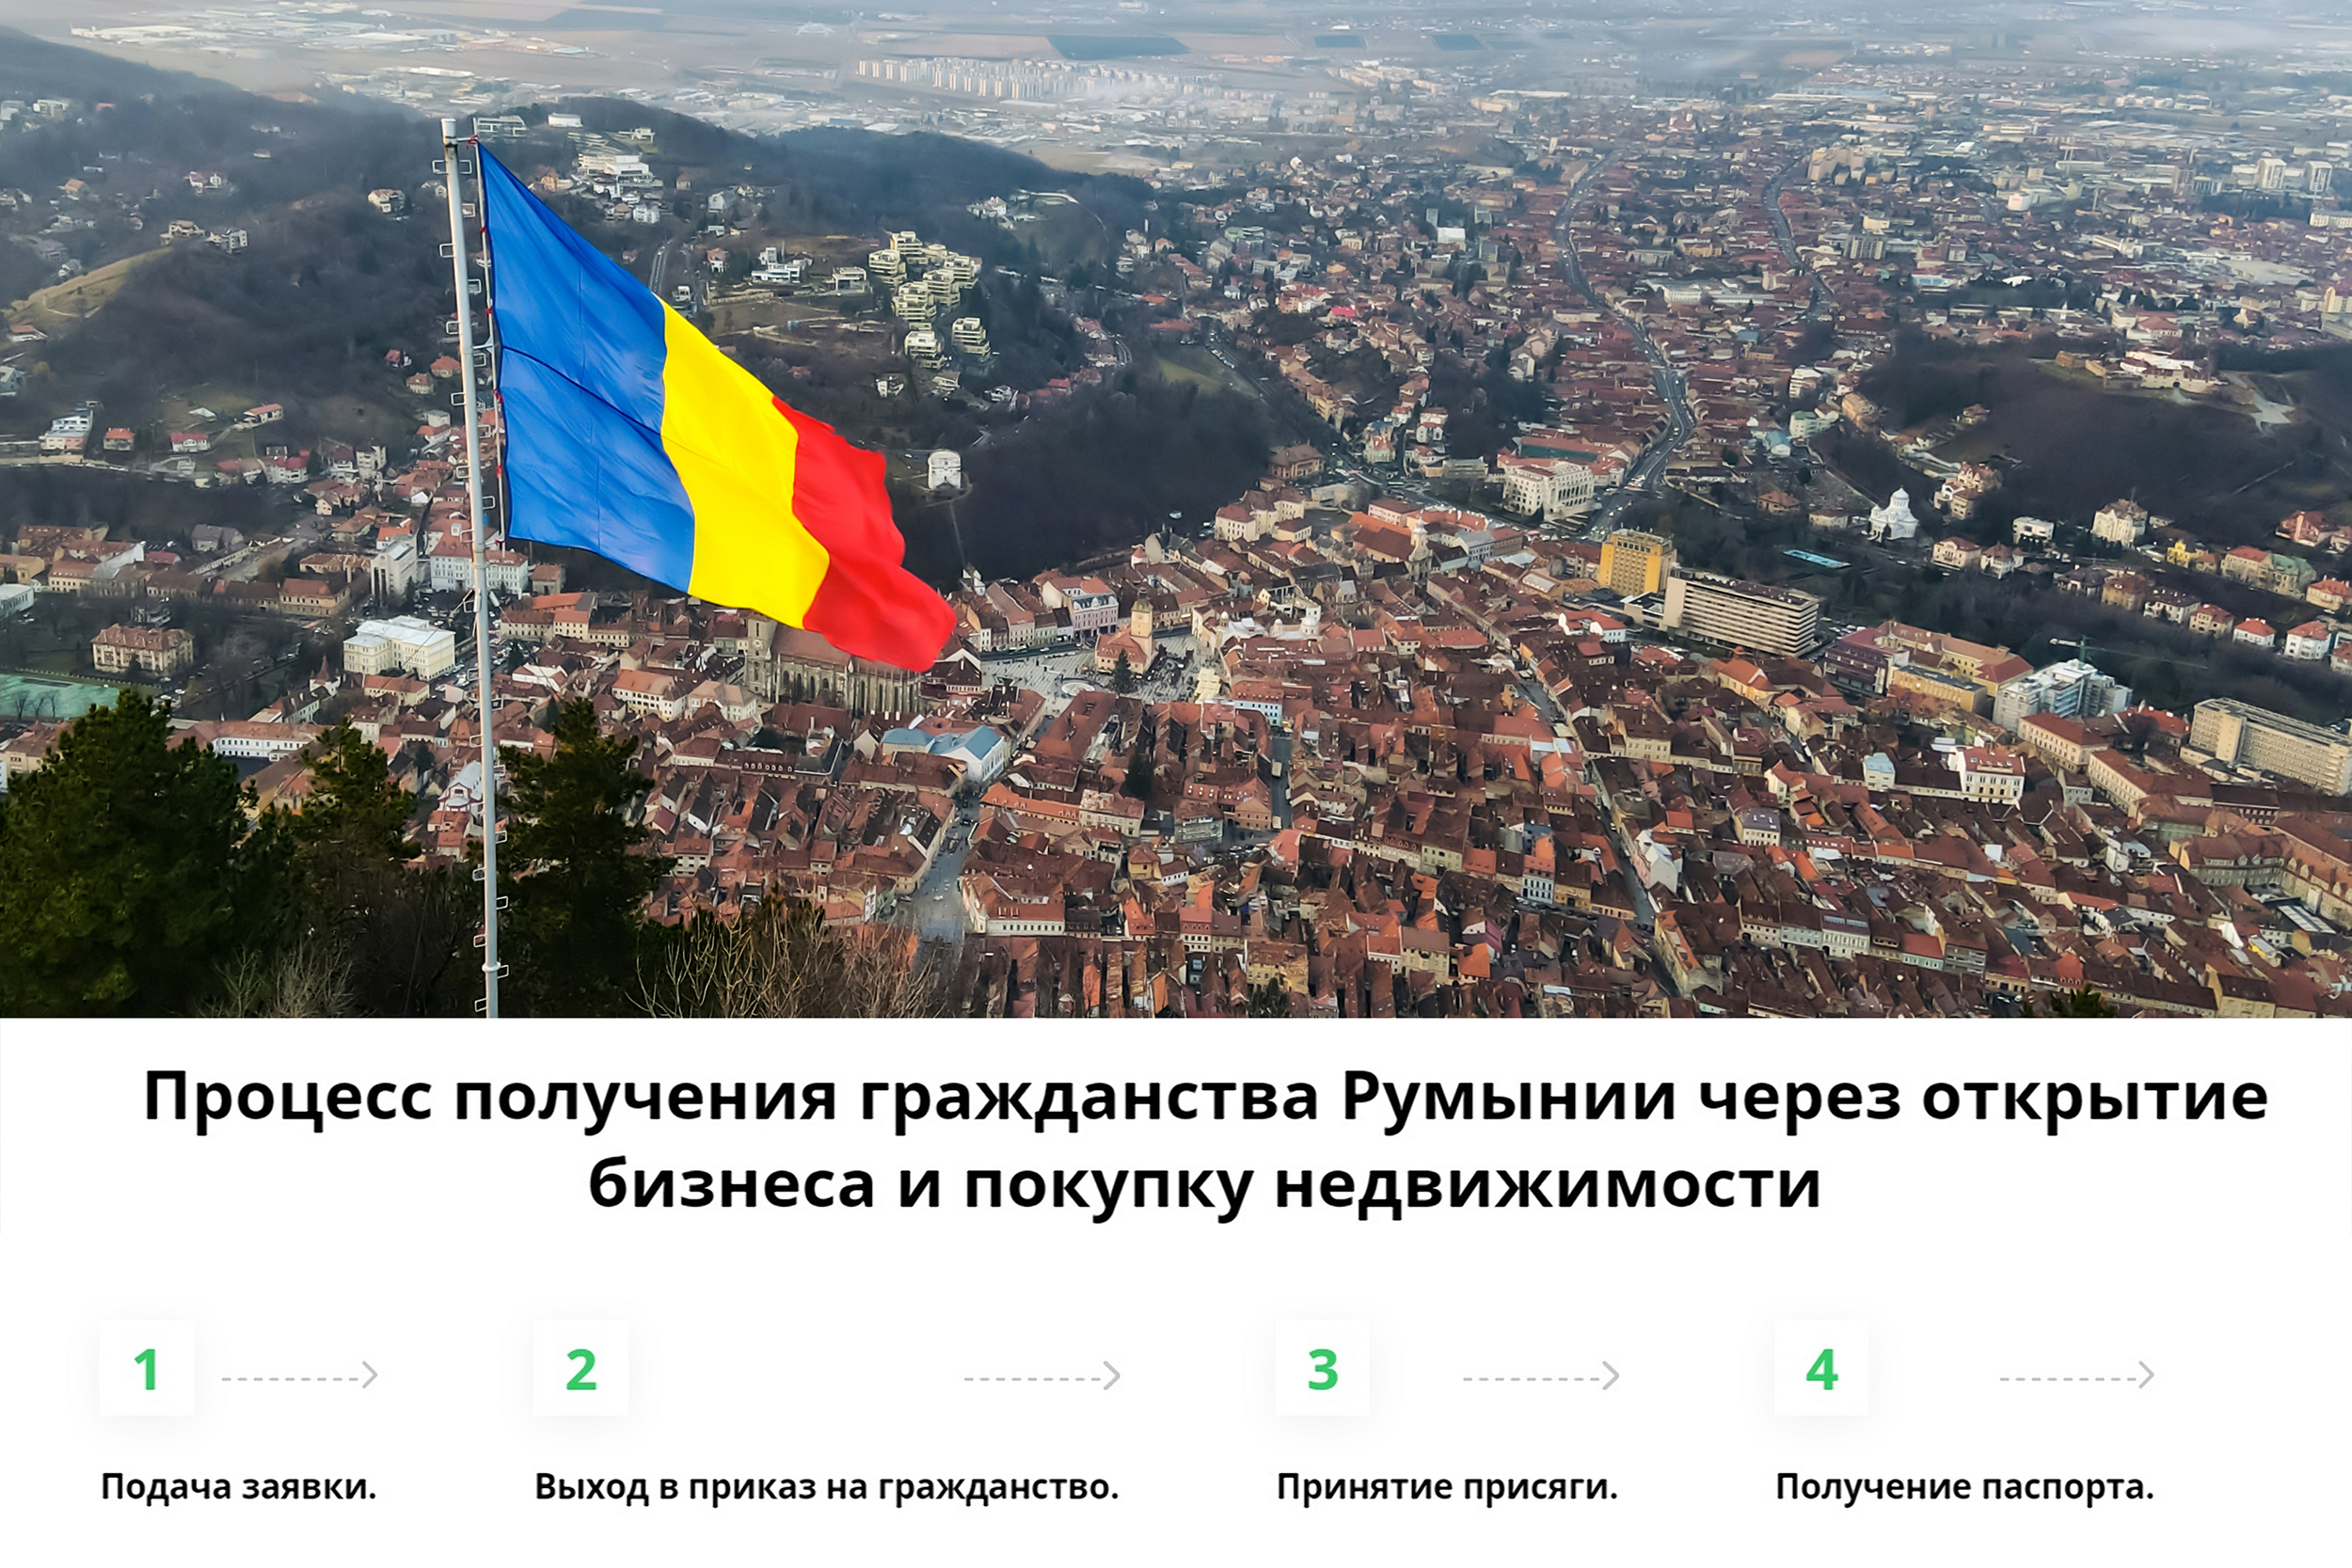 Оформление гражданства Румынии через открытие бизнеса и покупку недвижимости